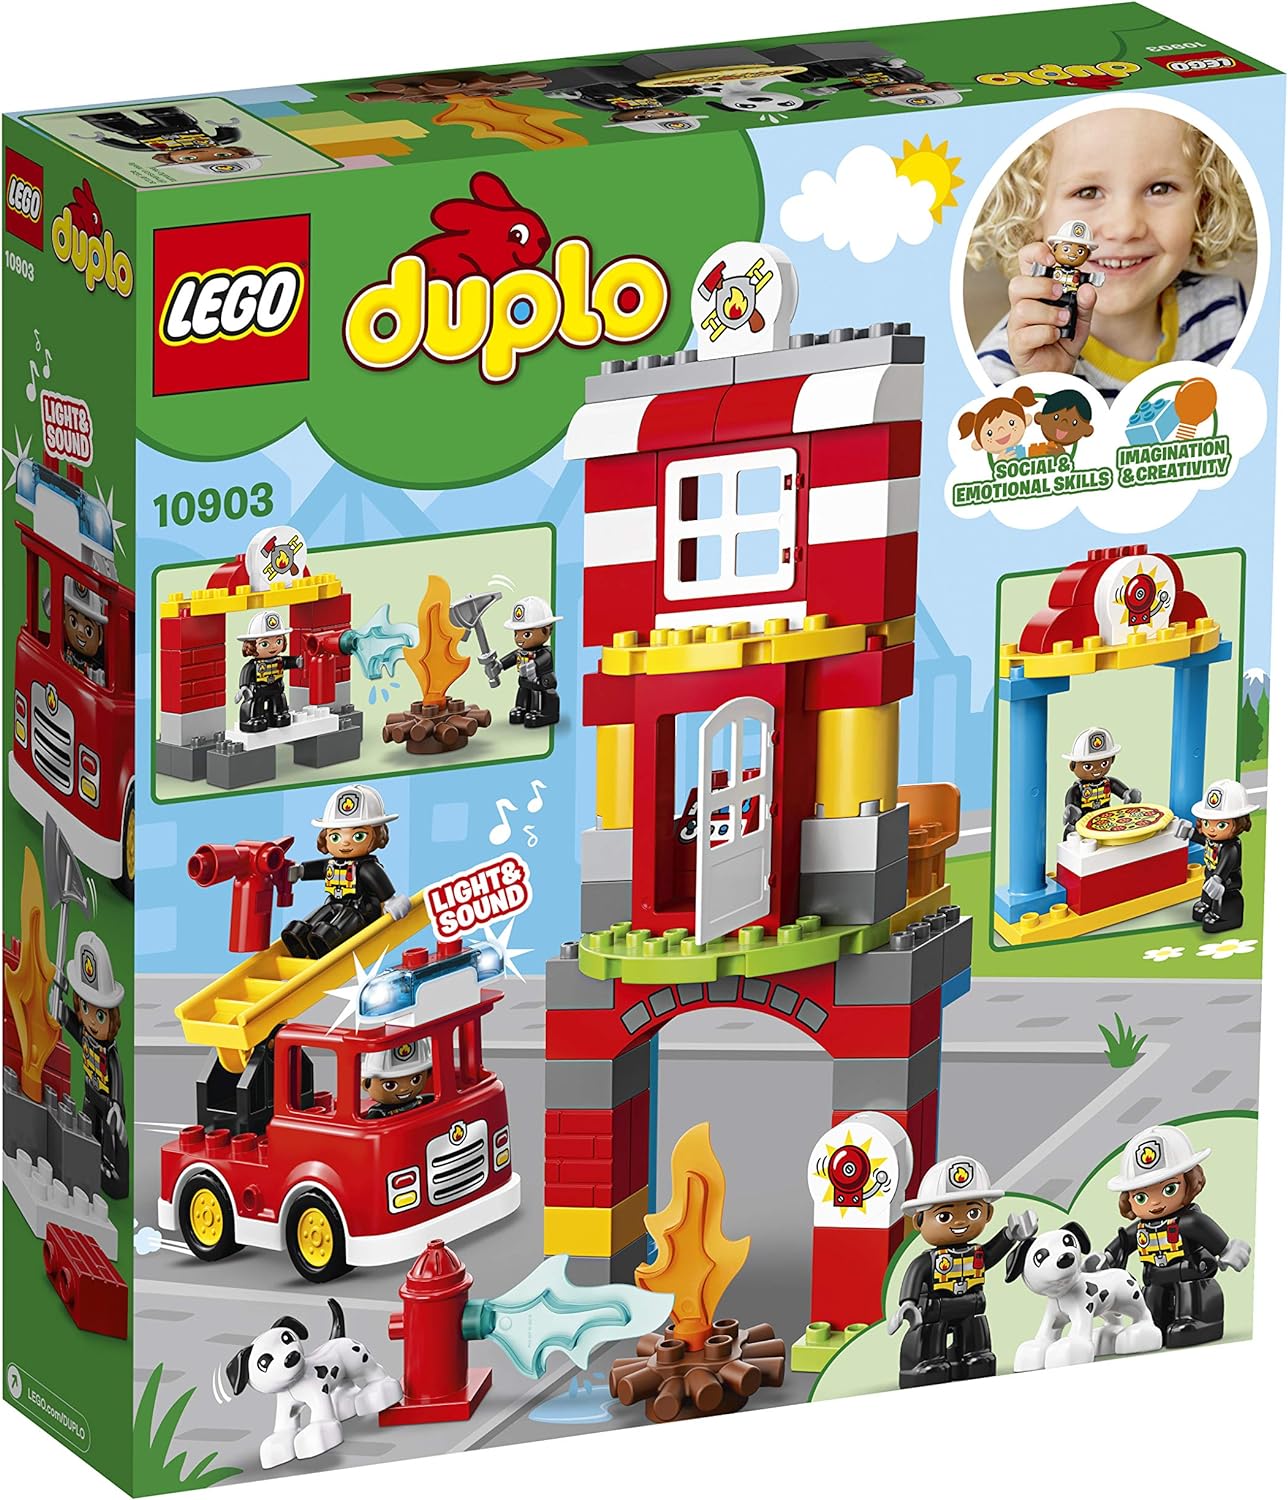 LEGO Duplo Set